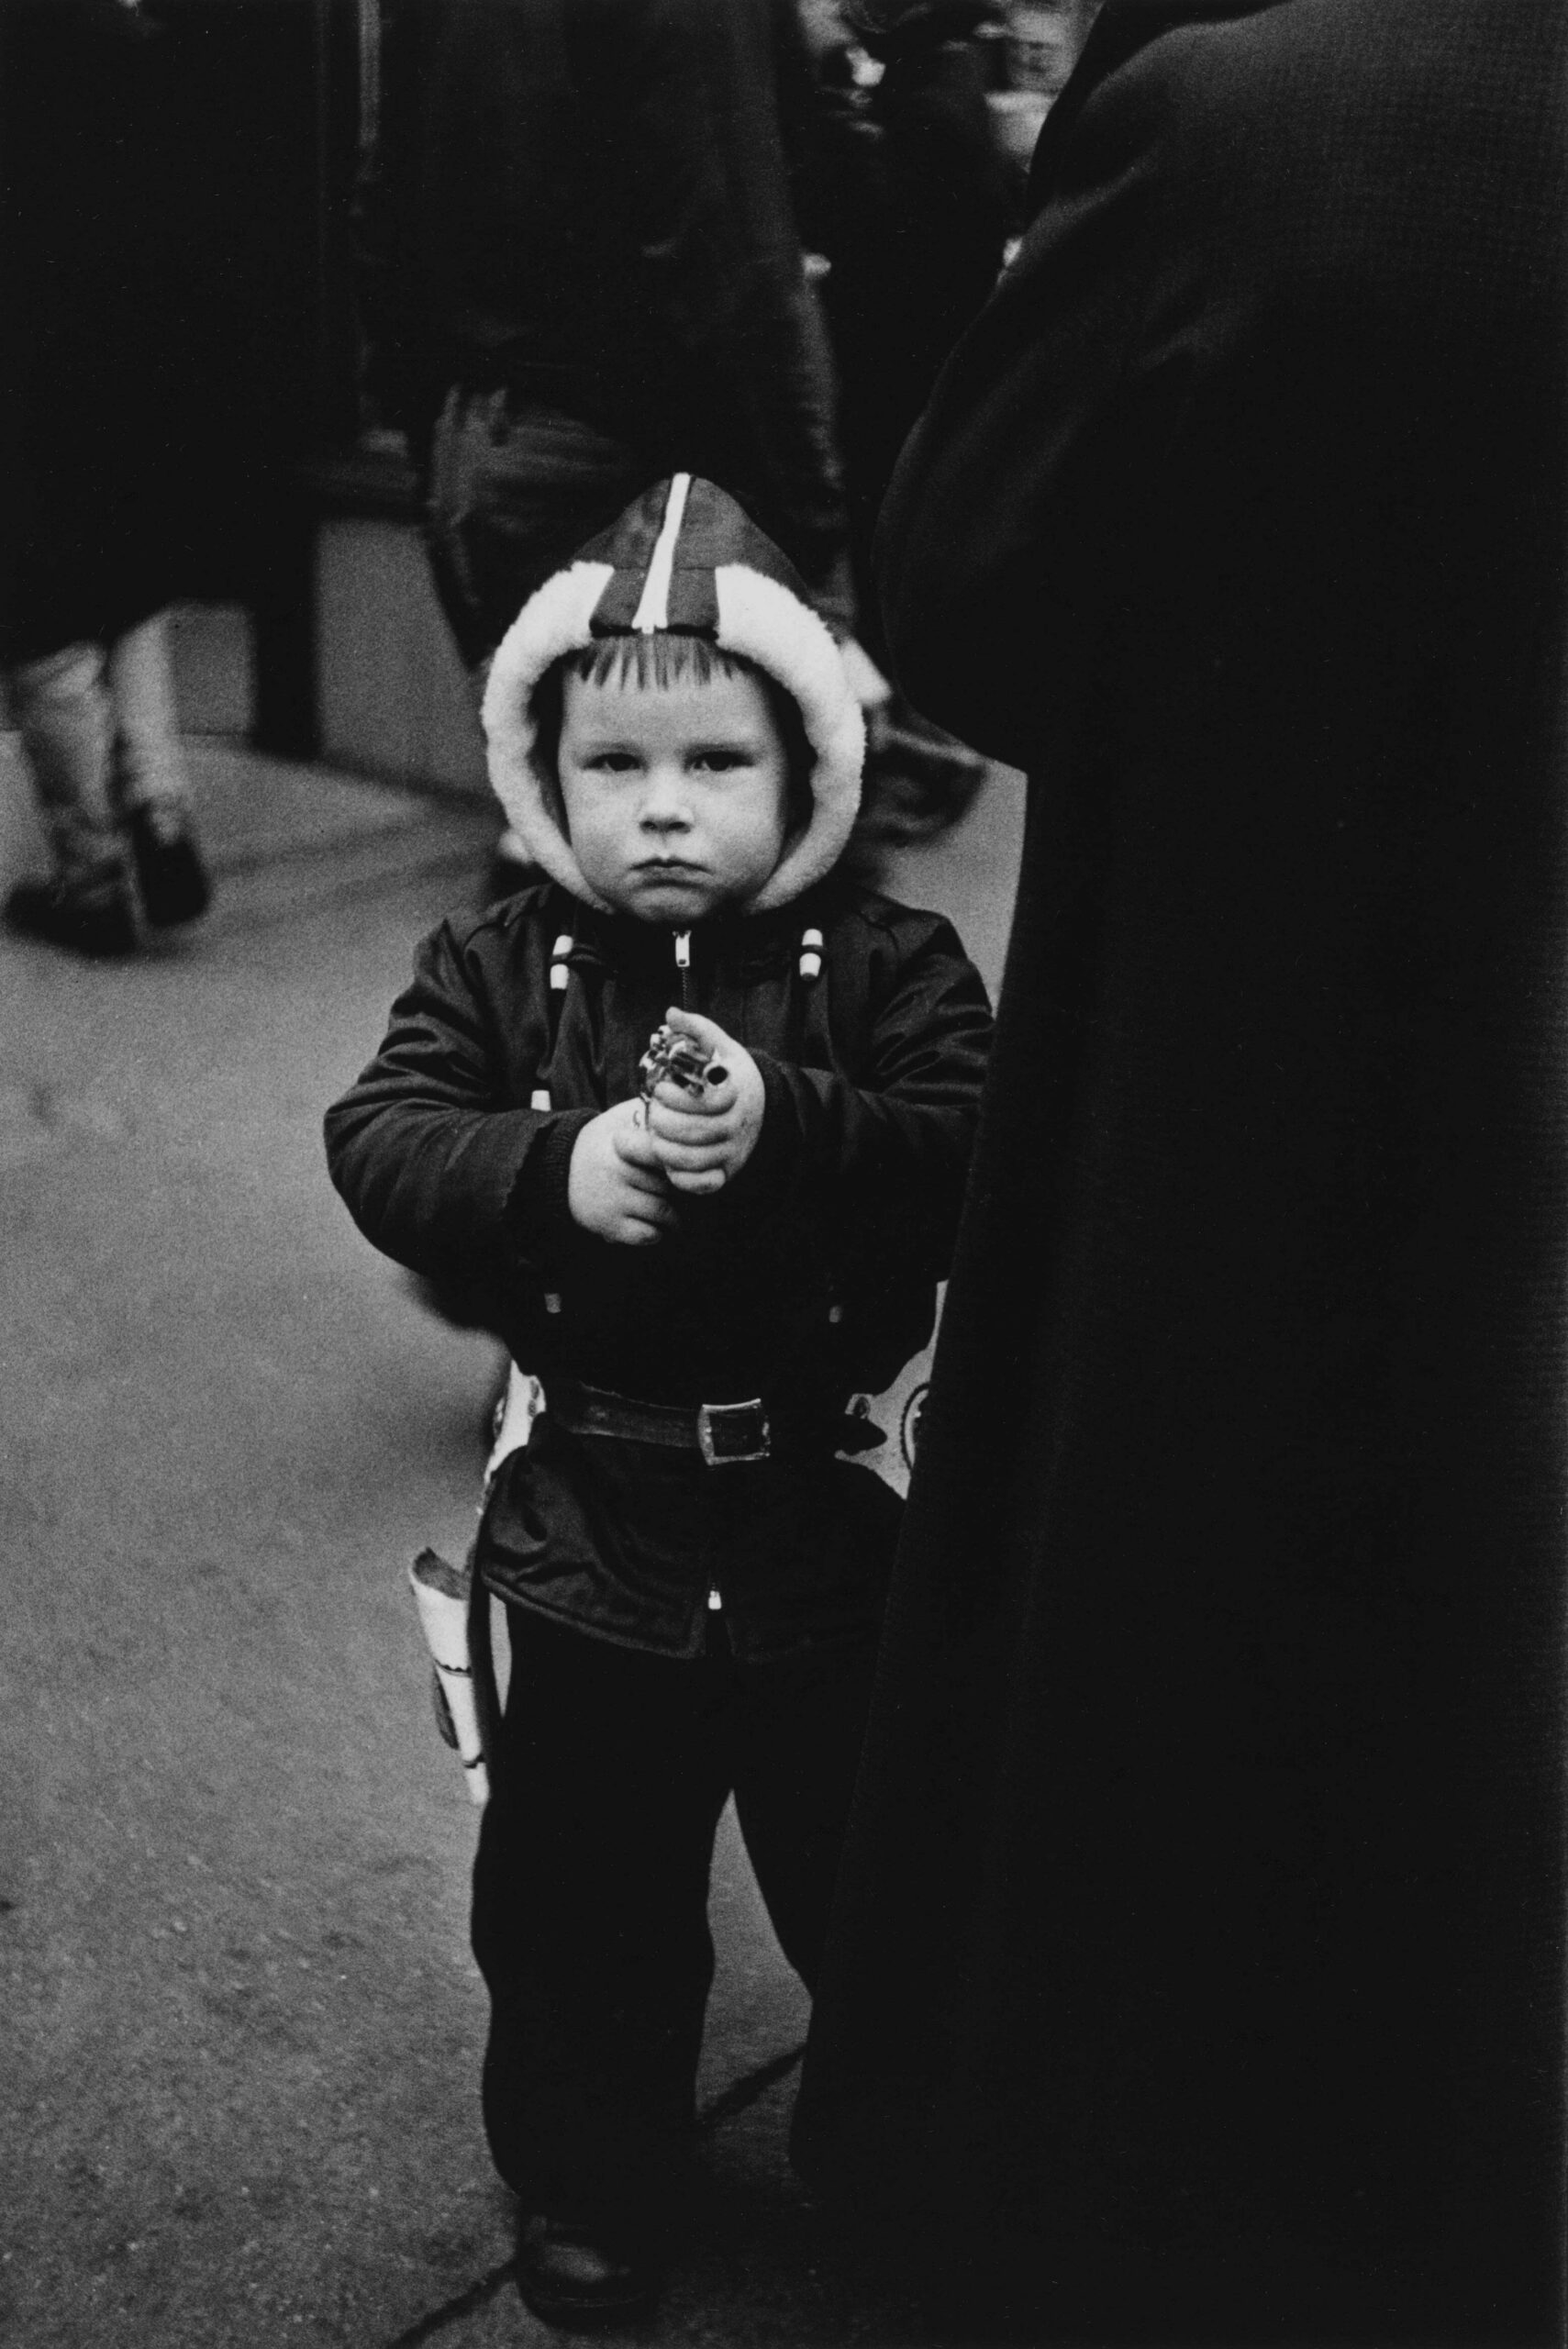 Diane Arbus. Kid in a hooded jacket aiming a gun, N.Y.C. 1957. Courtesy Metropolitan Museum of Art